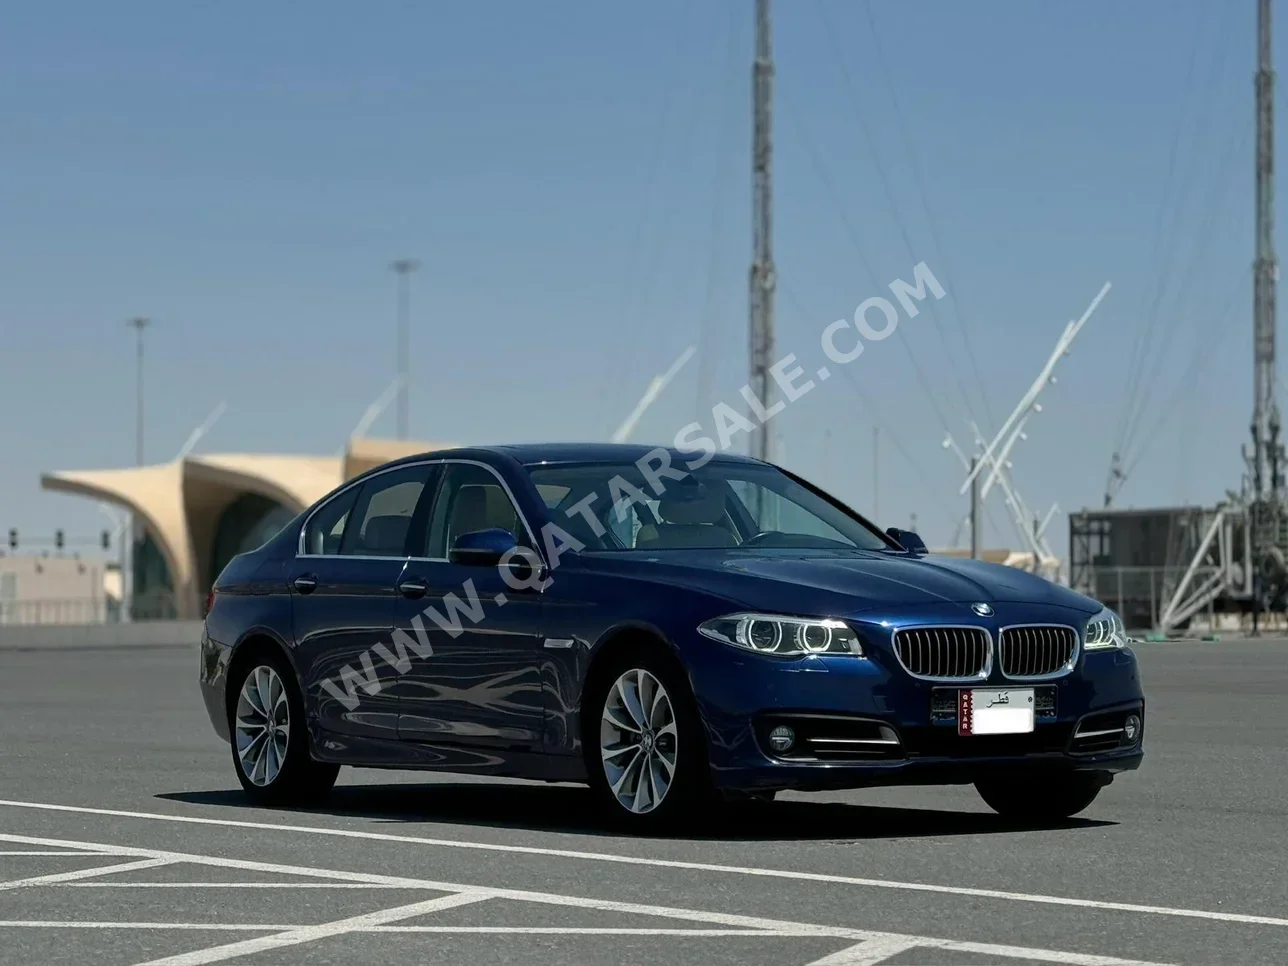 BMW  5-Series  520i  2016  Automatic  102,000 Km  4 Cylinder  Rear Wheel Drive (RWD)  Sedan  Blue